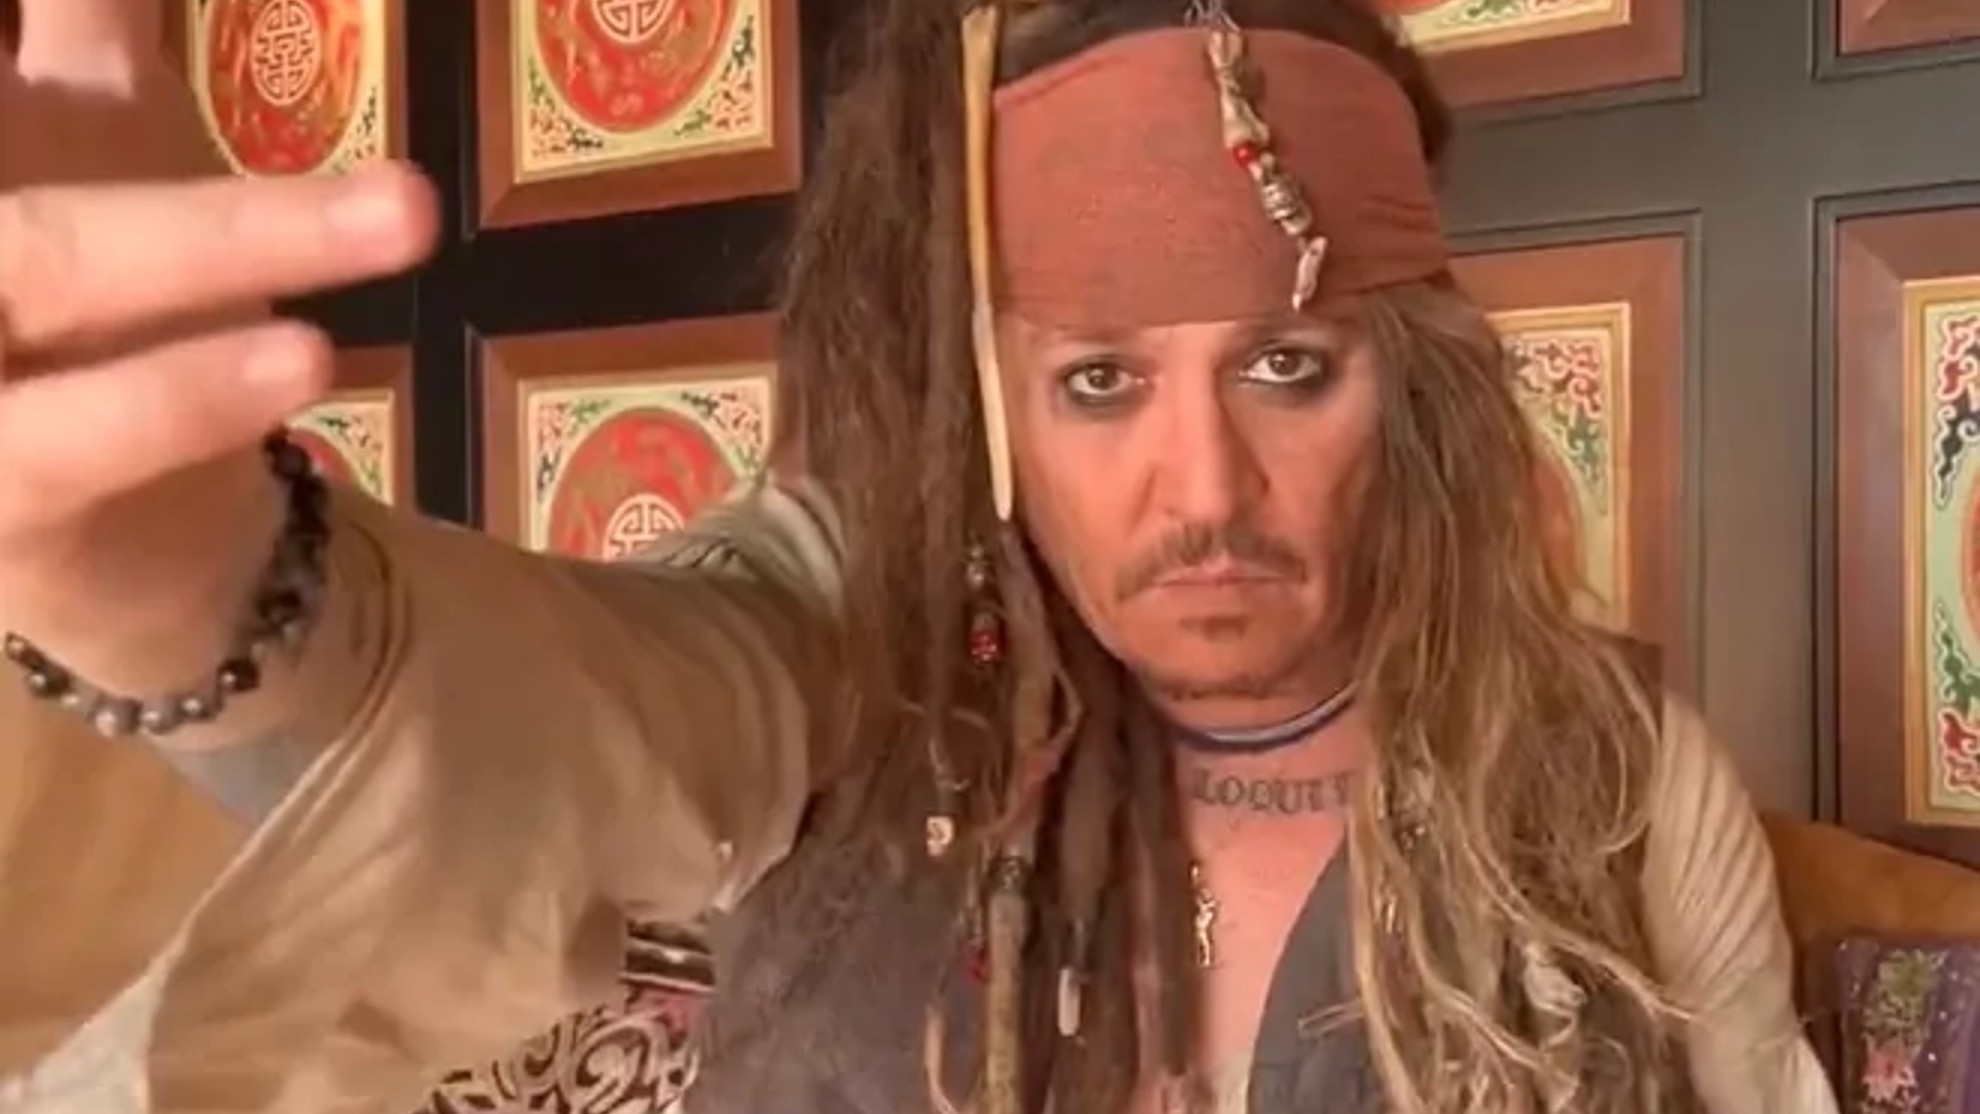 Johnny Depp se despide del 'Capitán Jack Sparrow' para siempre